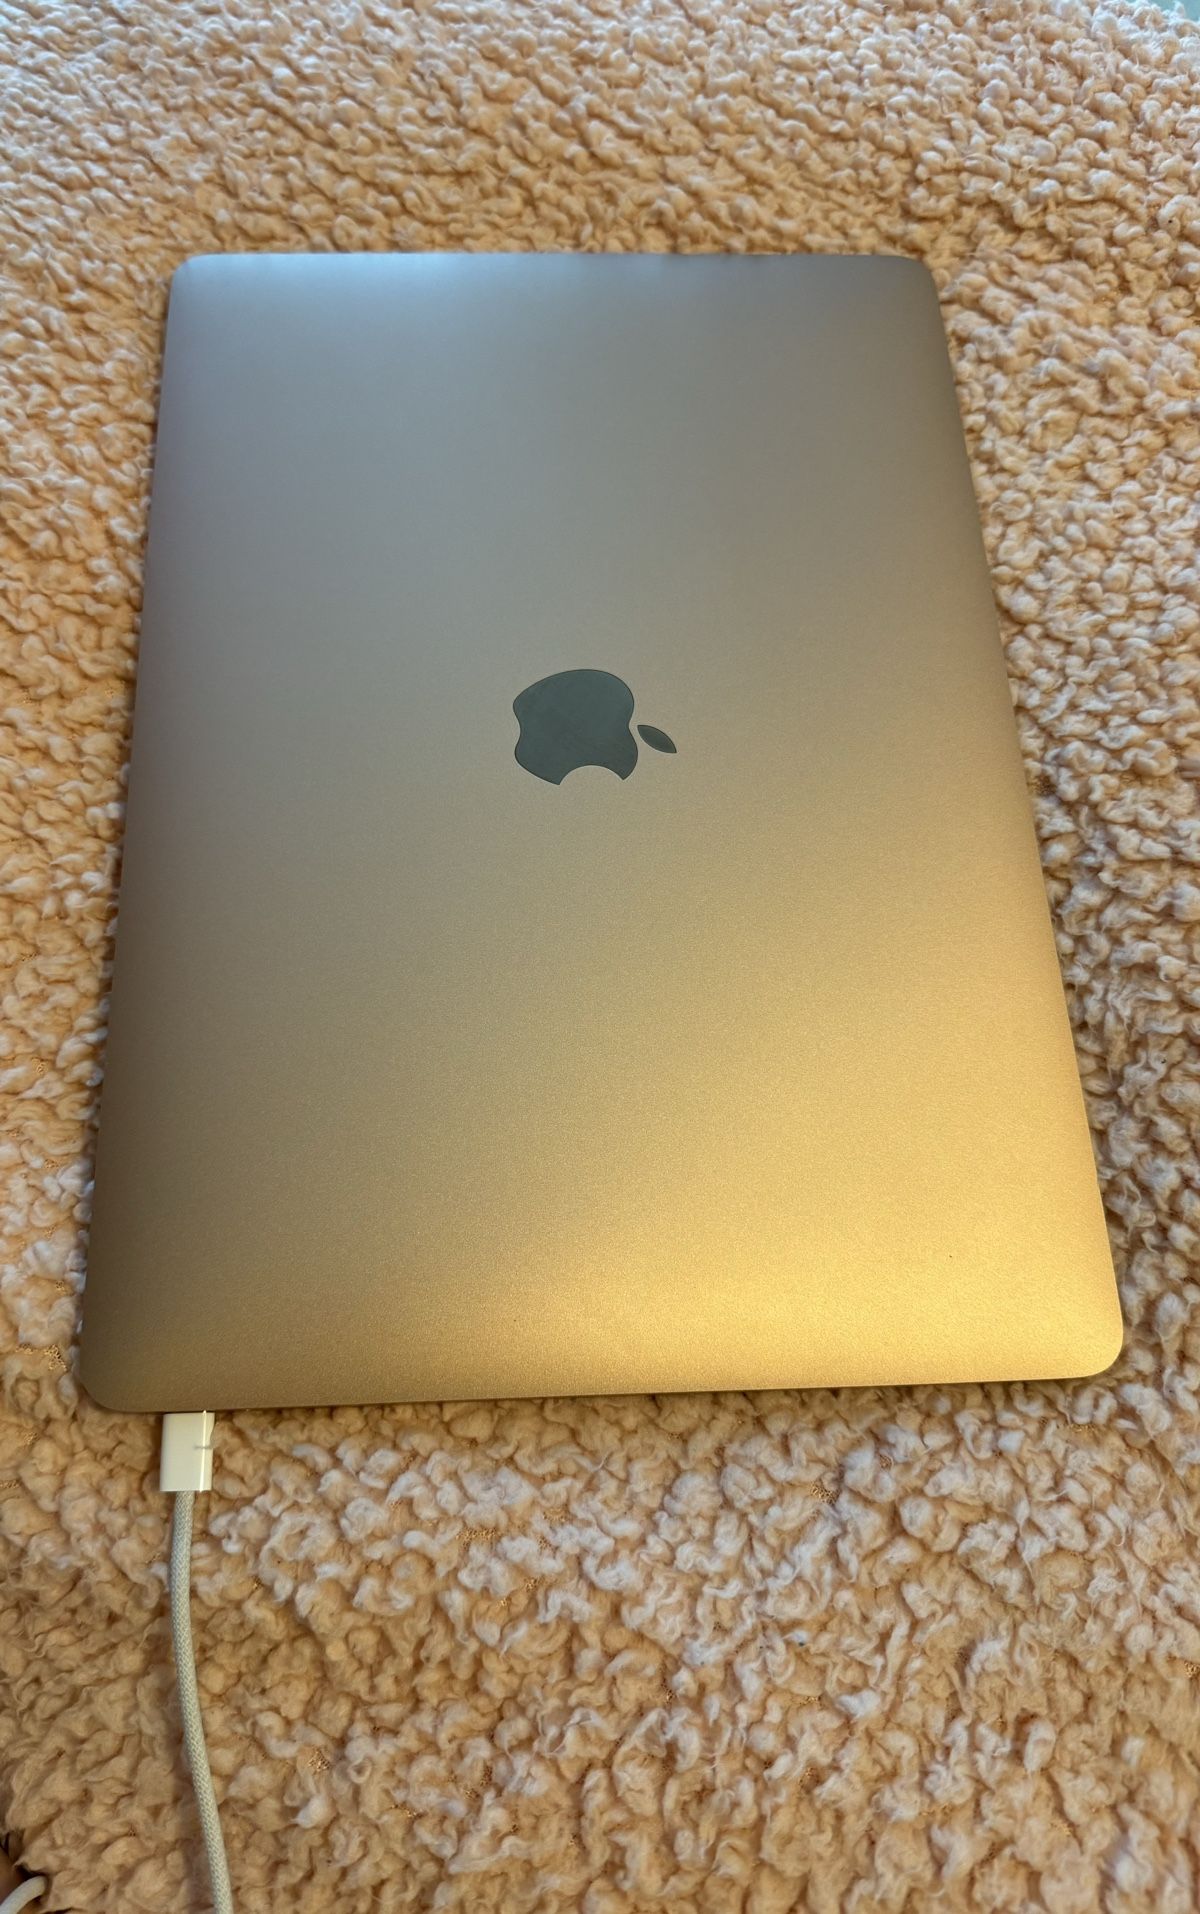 2020 MacBook Air Rose Gold